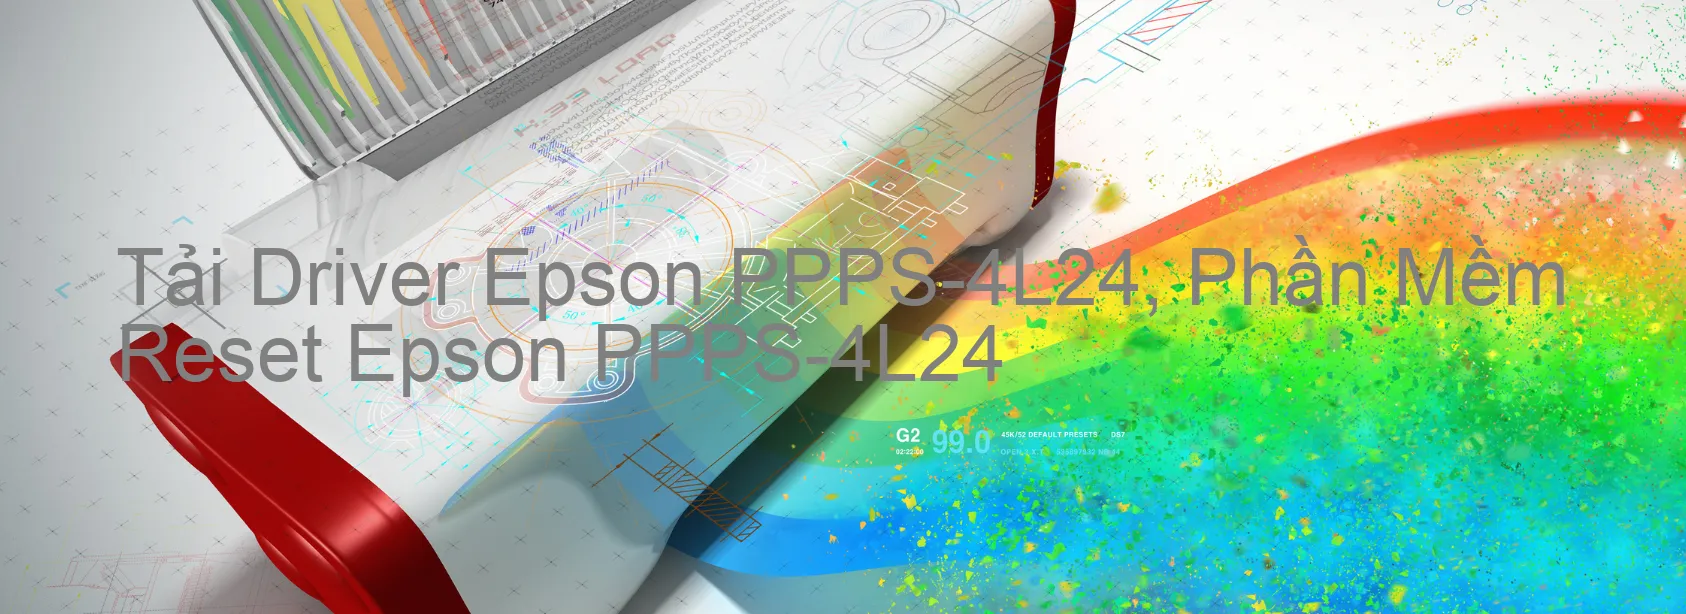 Driver Epson PPPS-4L24, Phần Mềm Reset Epson PPPS-4L24